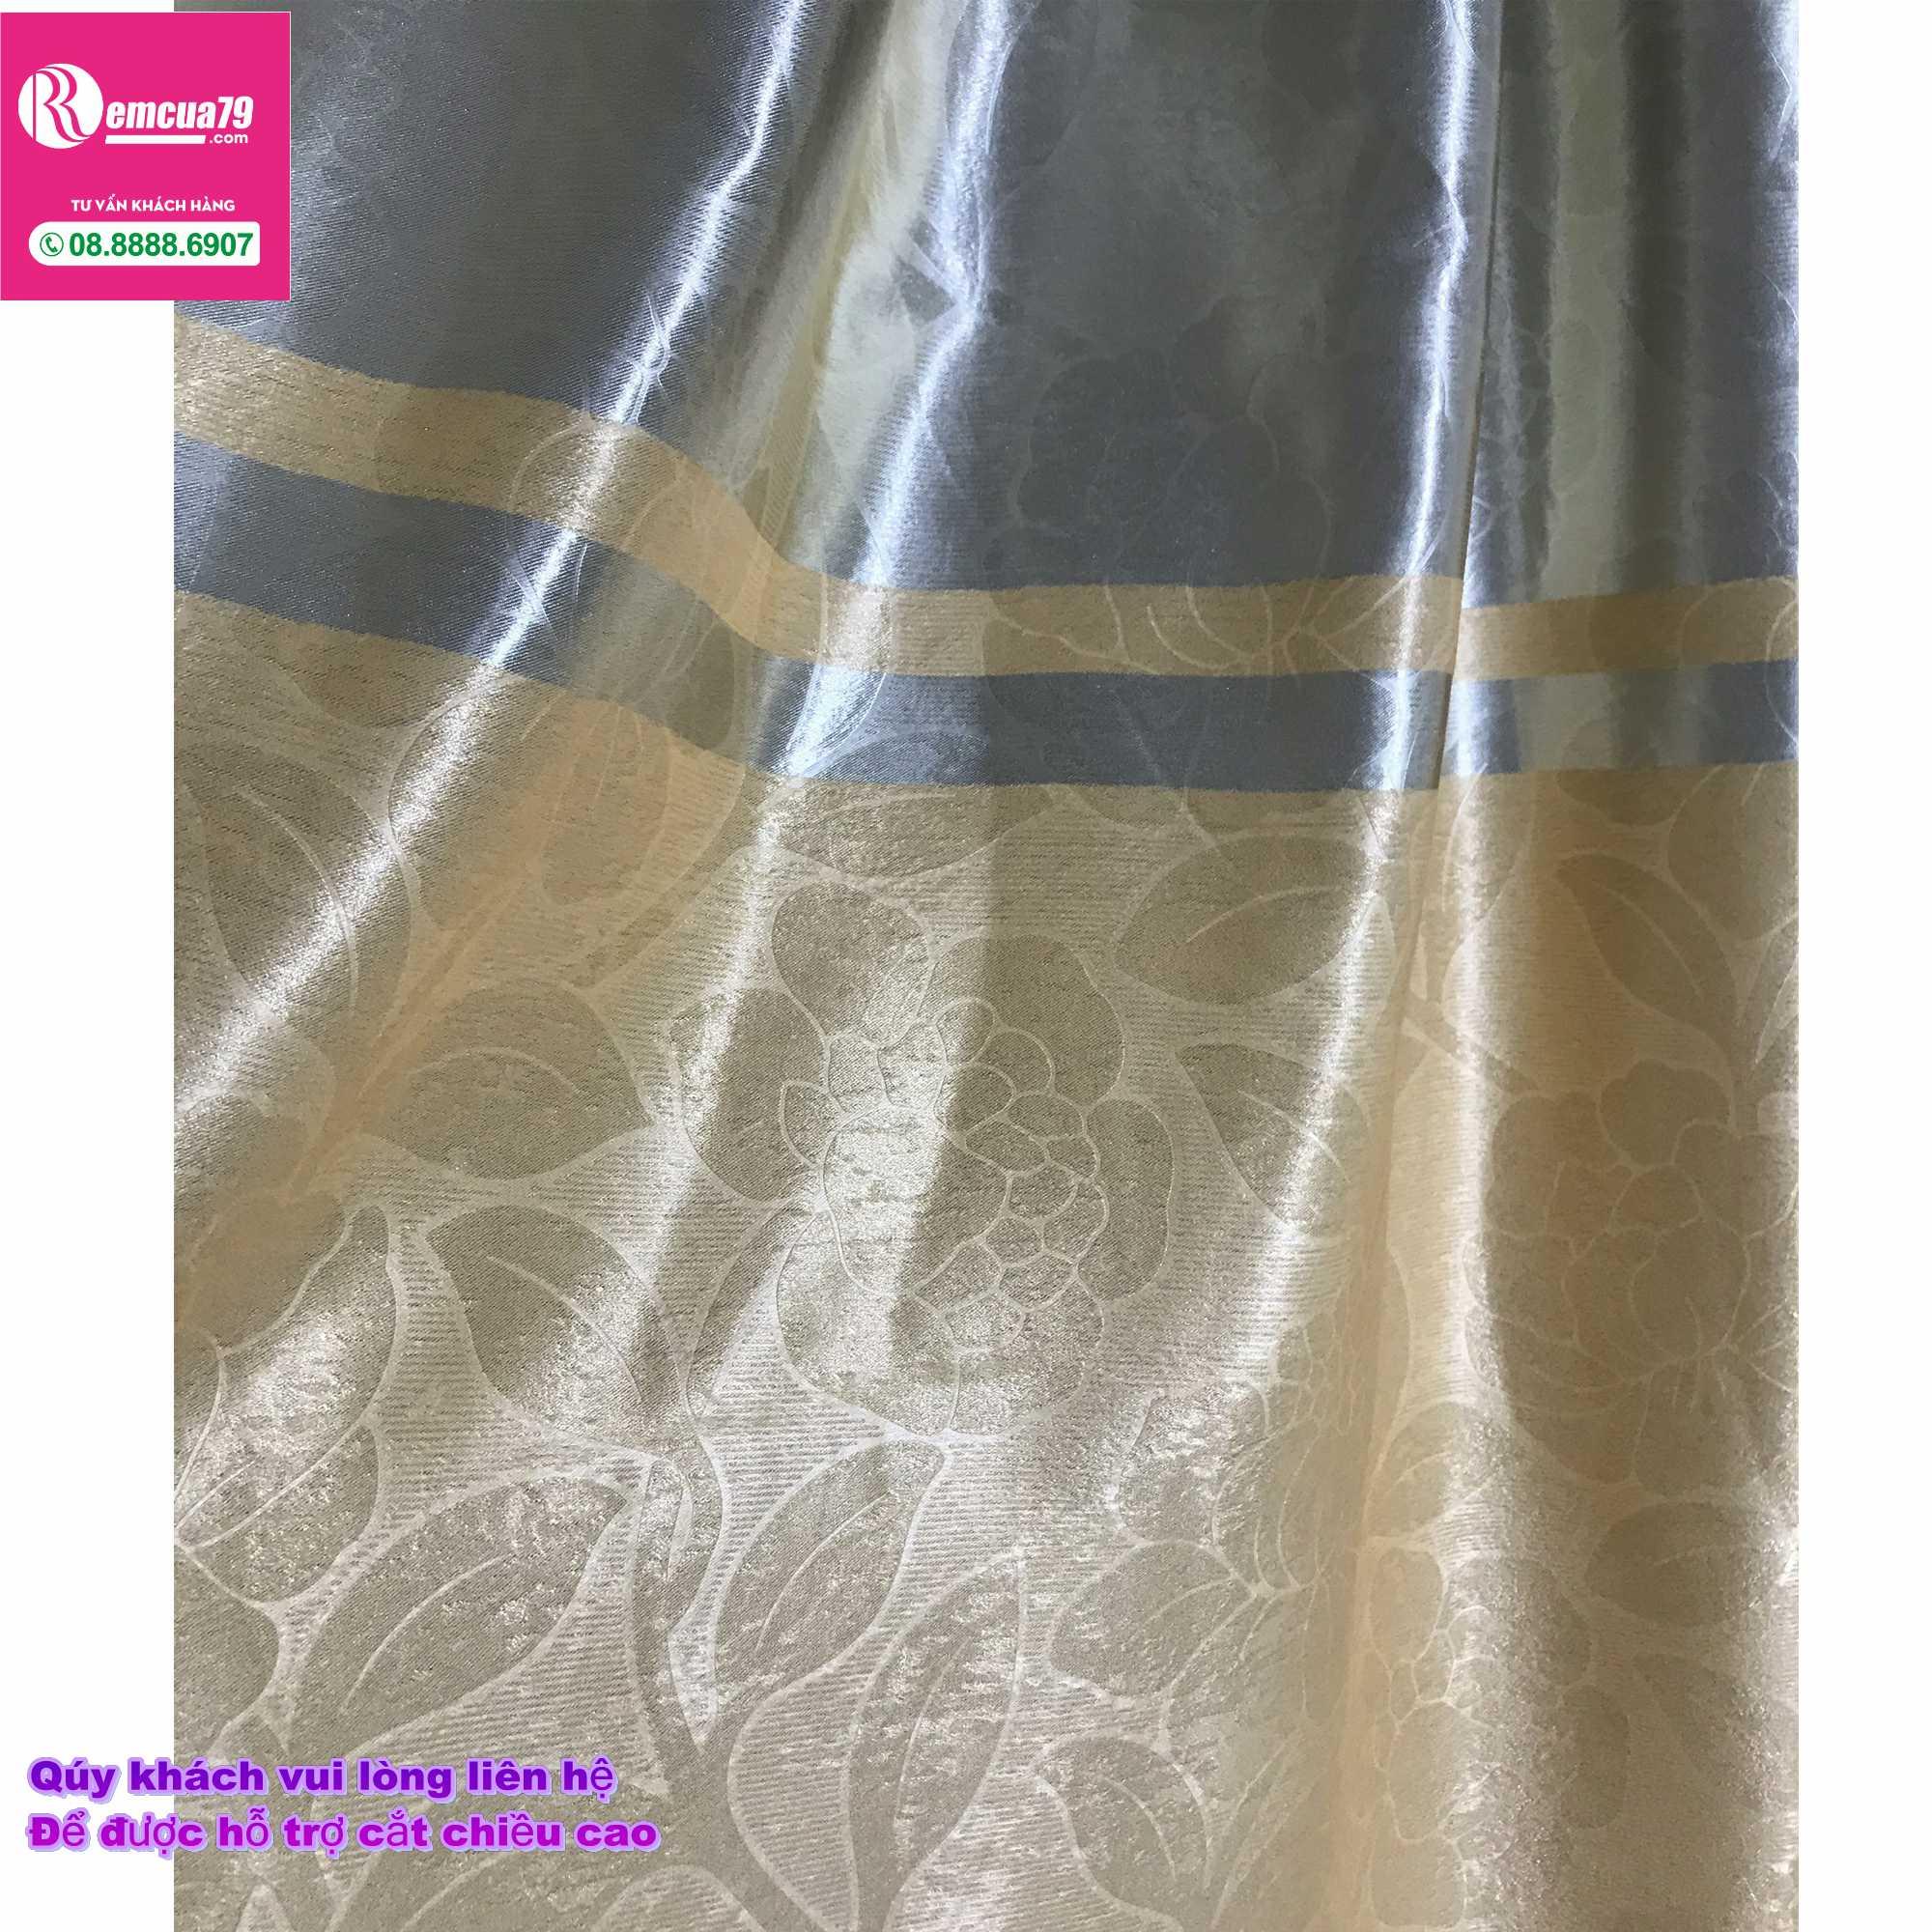 Rèm, màn cửa sổ Ph curtains( ngang200cm x cao 130cm) Màu Vàng xám nhẹ hoa văn chìm+tặng dây vén màn